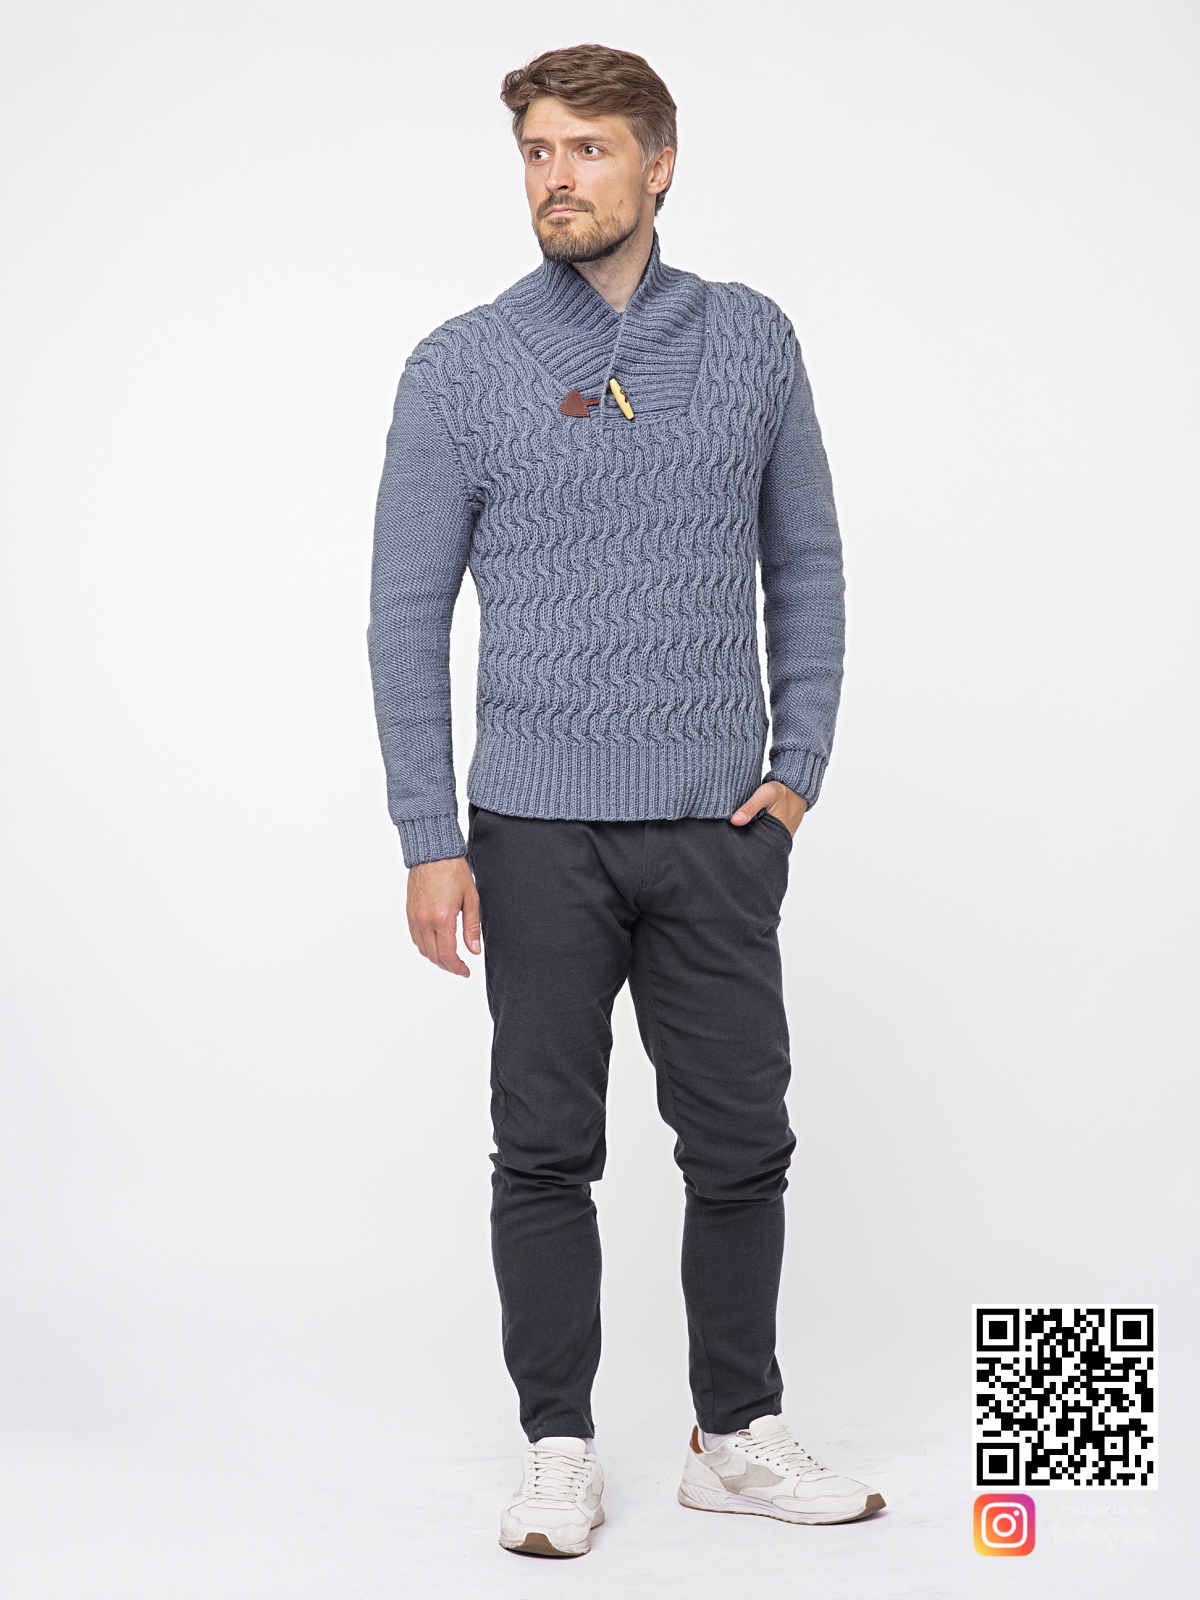 На пятой фотографии теплый мужской свитер серого цвета от Shapar, бренда связанной одежды ручной работы в интернет-магазине вещей.